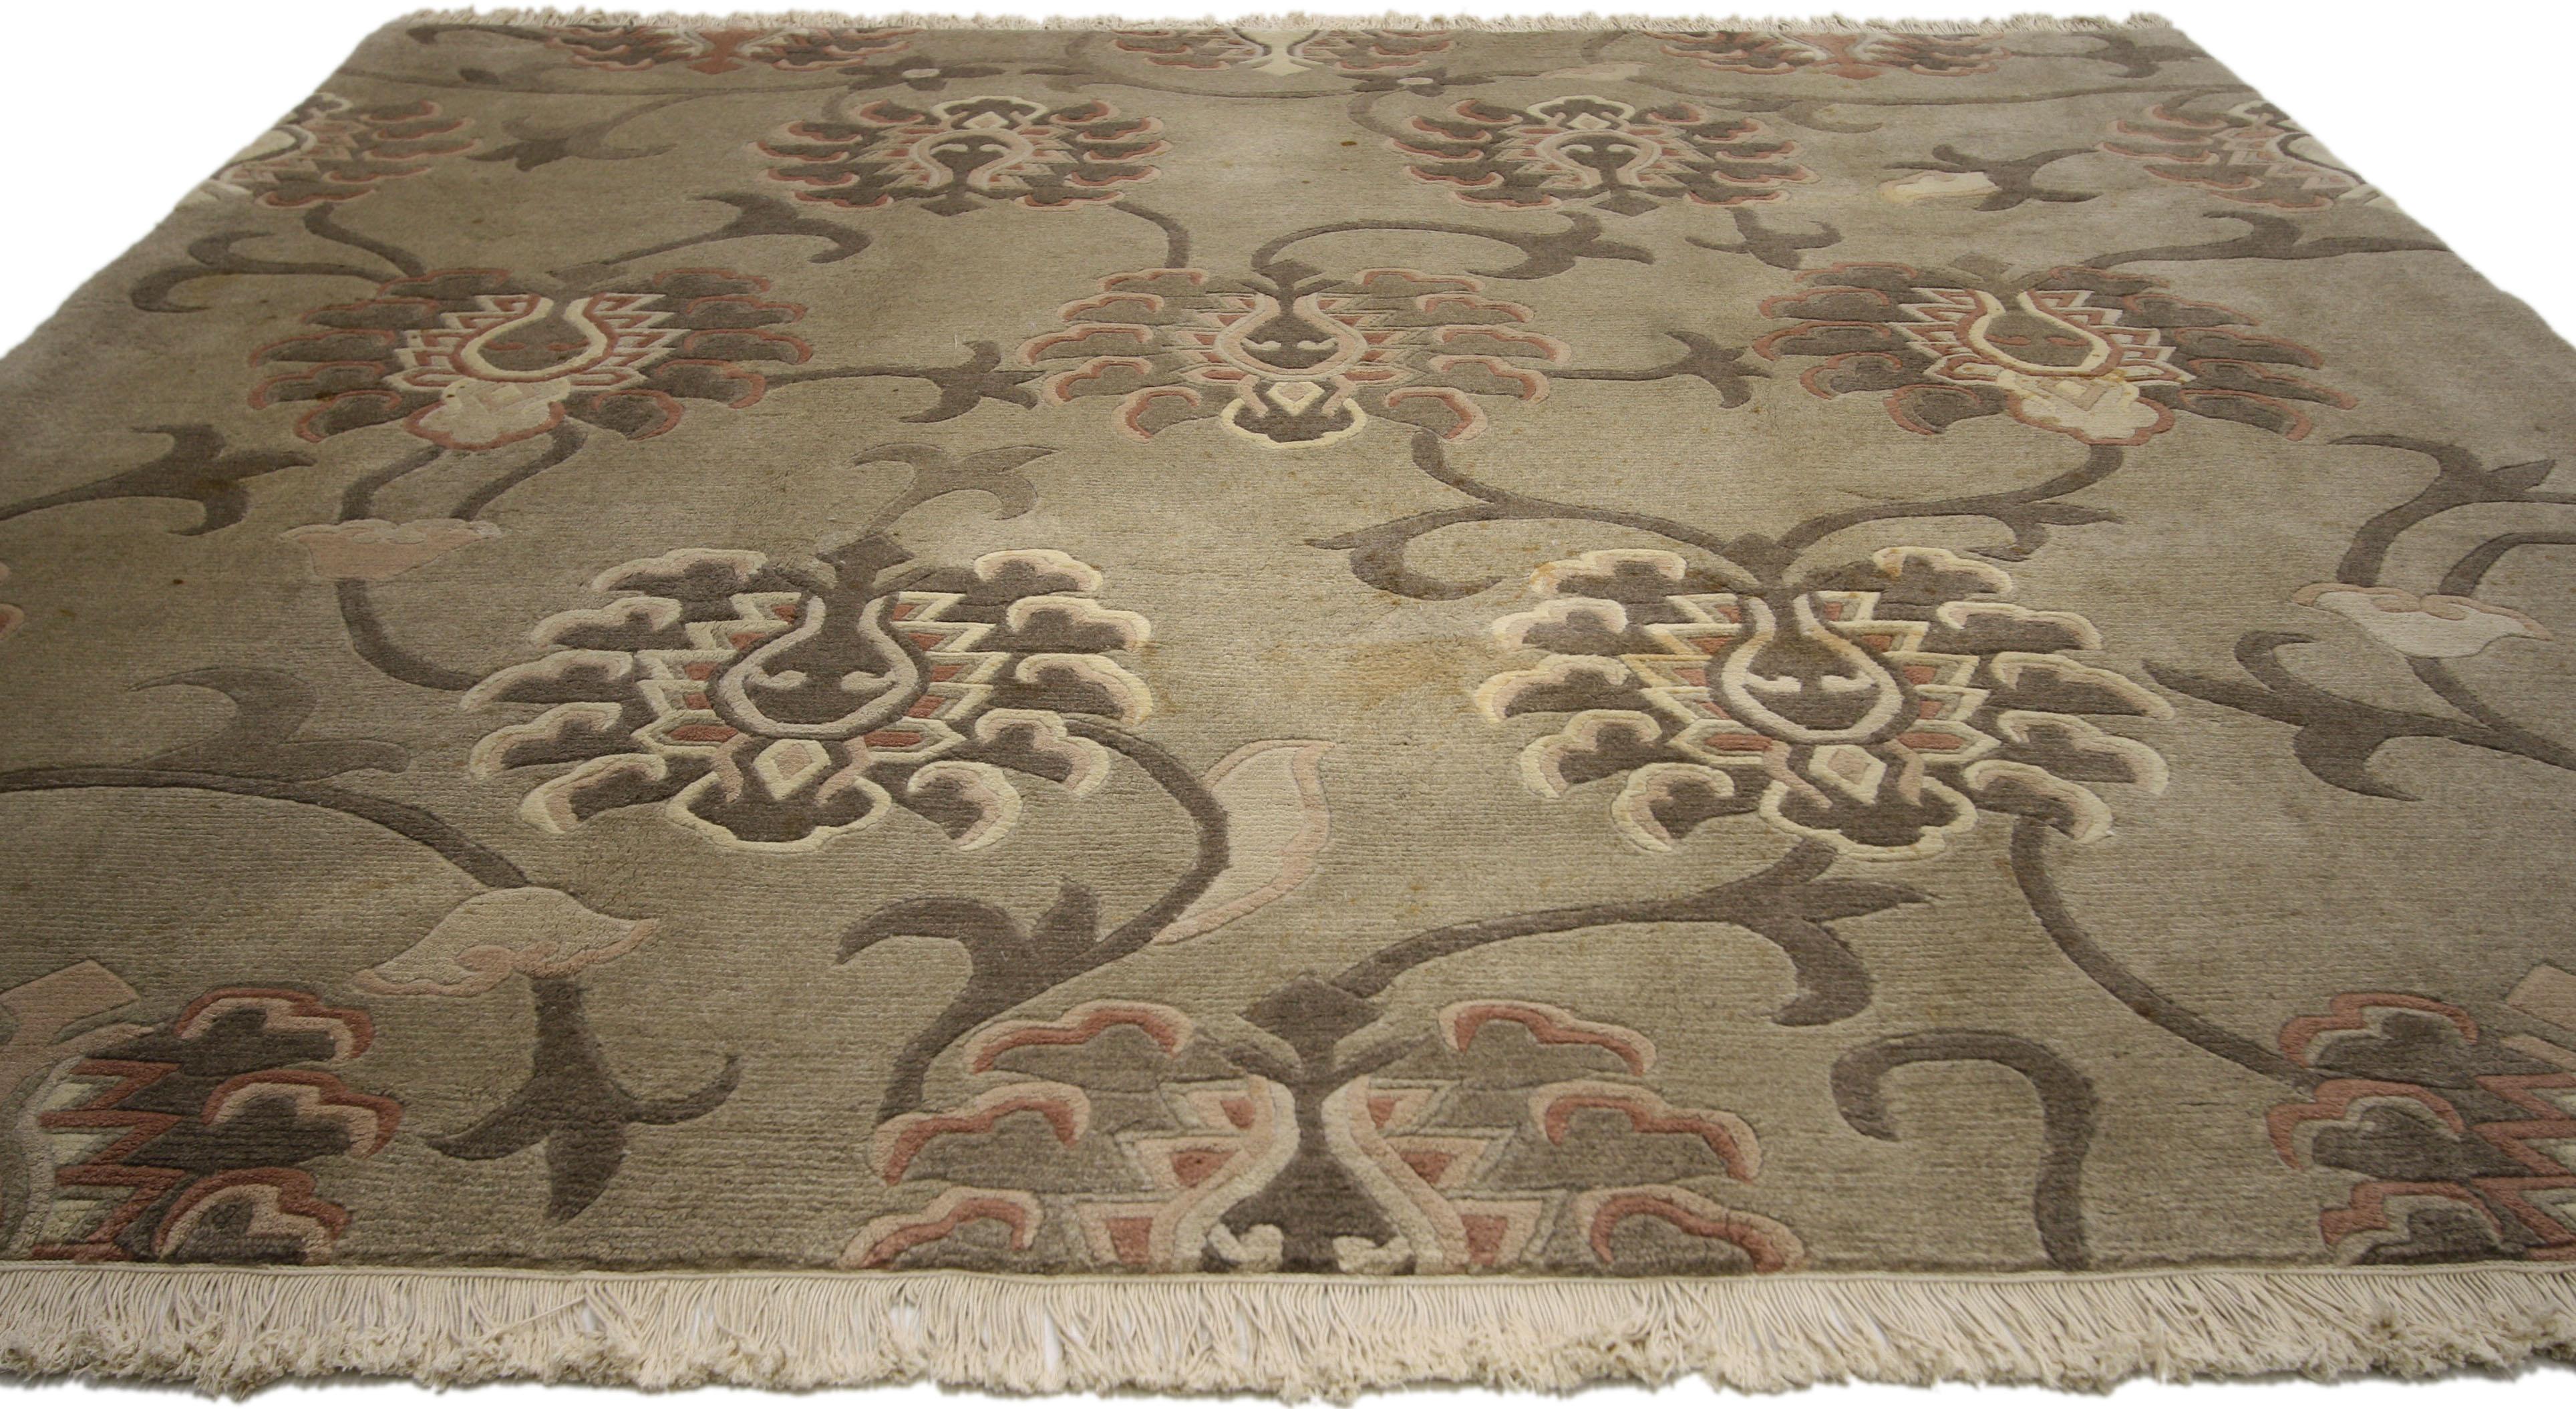 72906, Quadratischer Vintage-Tibet-Teppich im Übergangsstil mit großflächigem geometrischem Blumenmuster. Dieser handgeknüpfte tibetische Wollteppich zeigt ein großflächiges Blumenmuster mit großen blühenden Lilien und wirbelnden Ranken auf einem